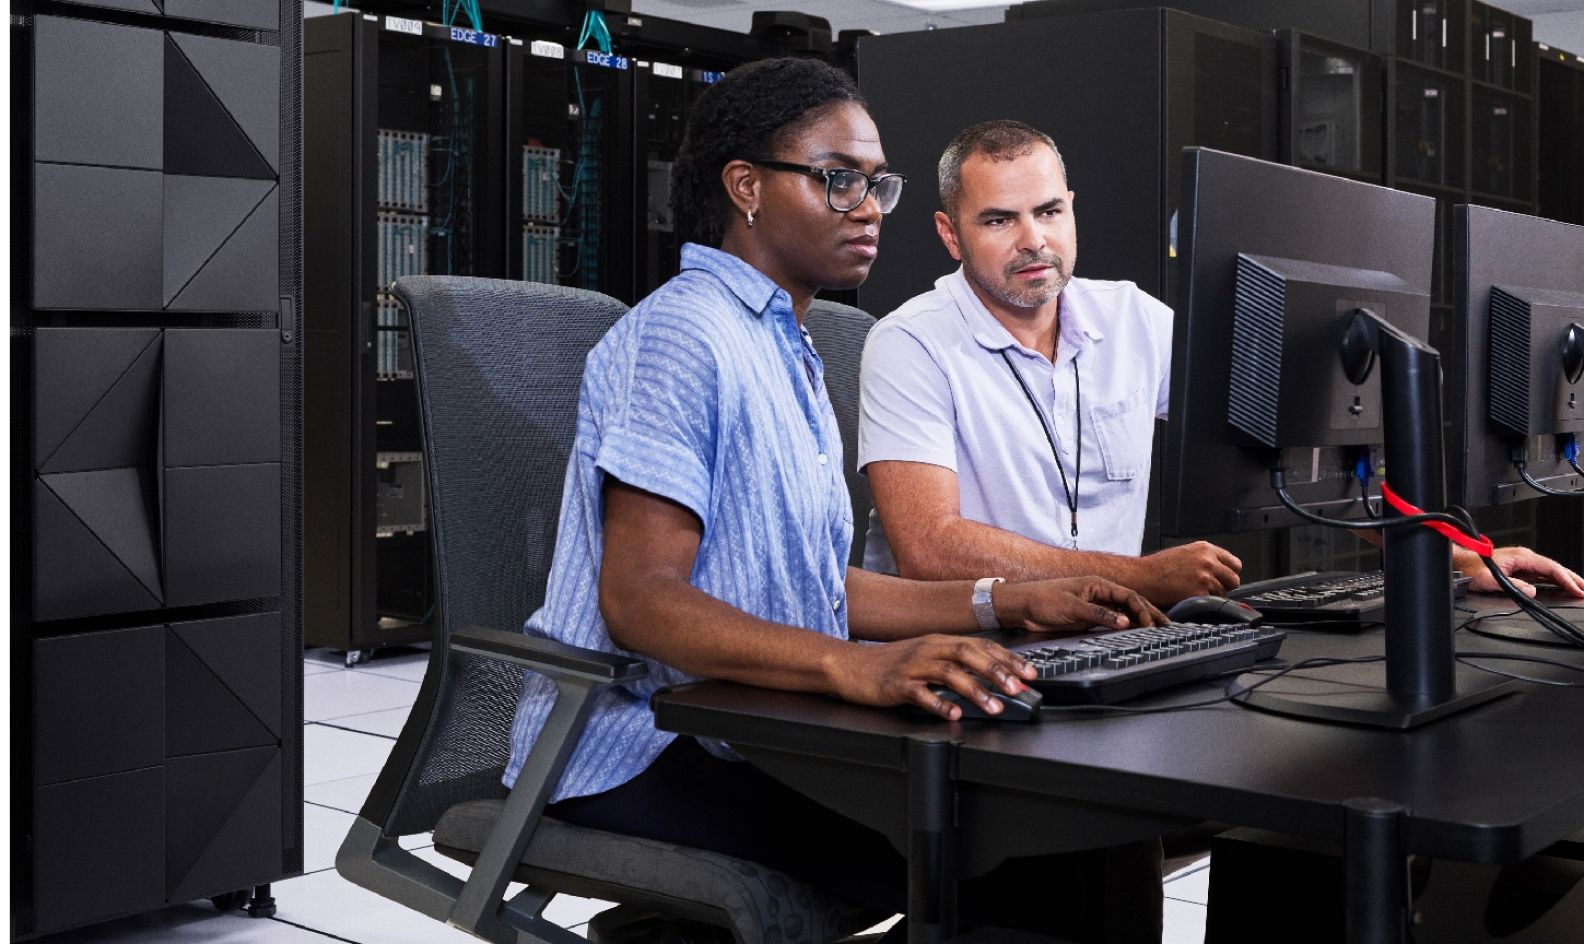 Dos trabajadores sentados en un escritorio compartido, ambos mirando el monitor del ordenador